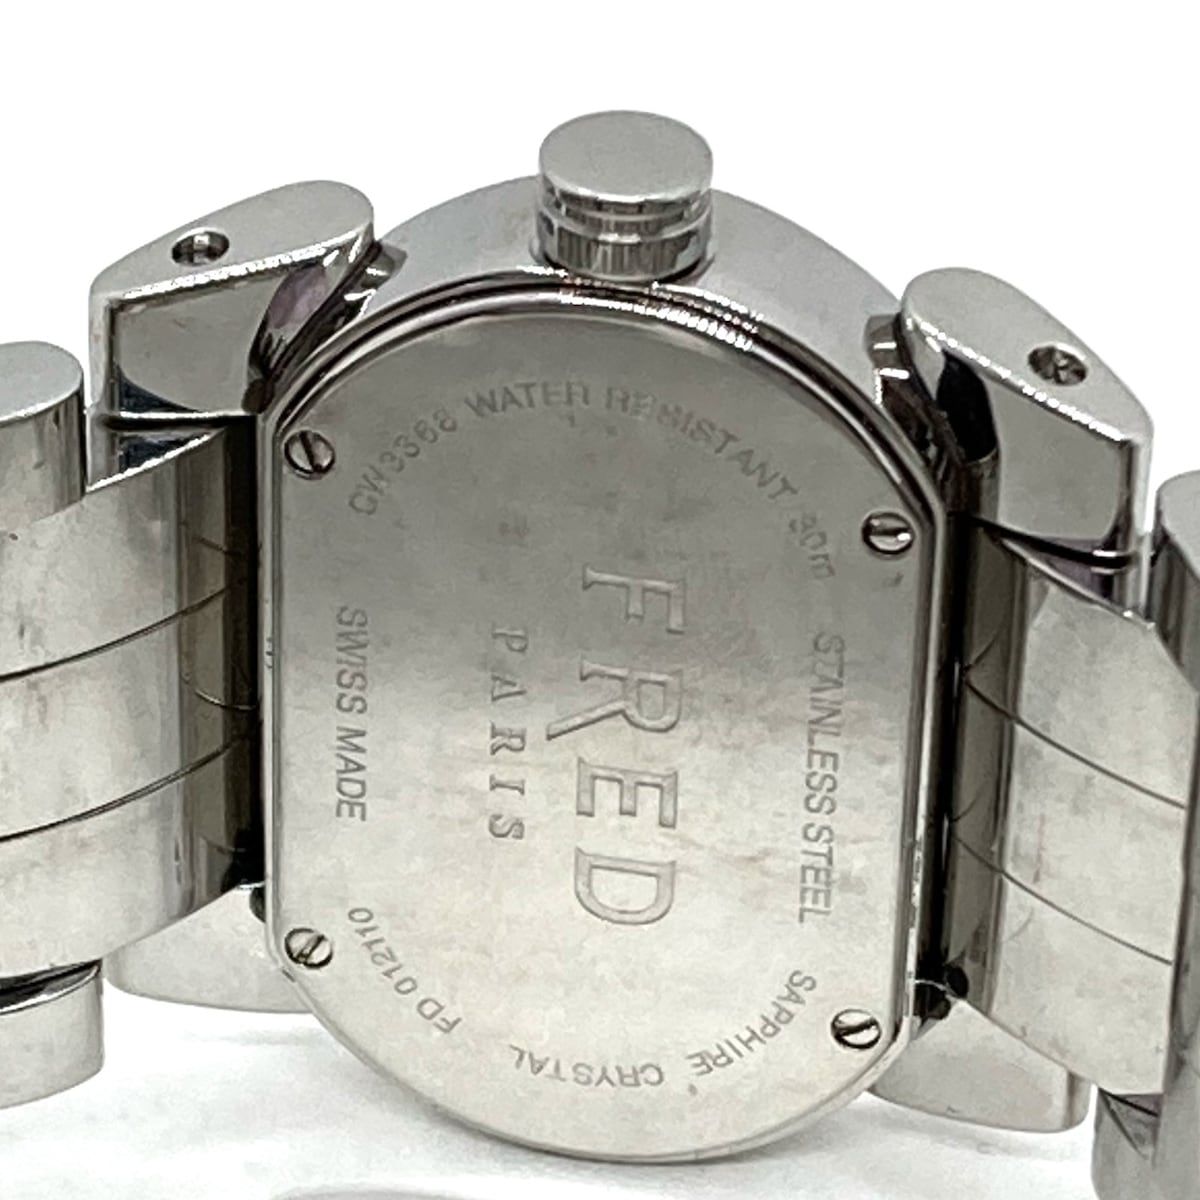 FRED(フレッド) 腕時計美品 ムーブワン FD012110 レディース 黒 - メルカリ